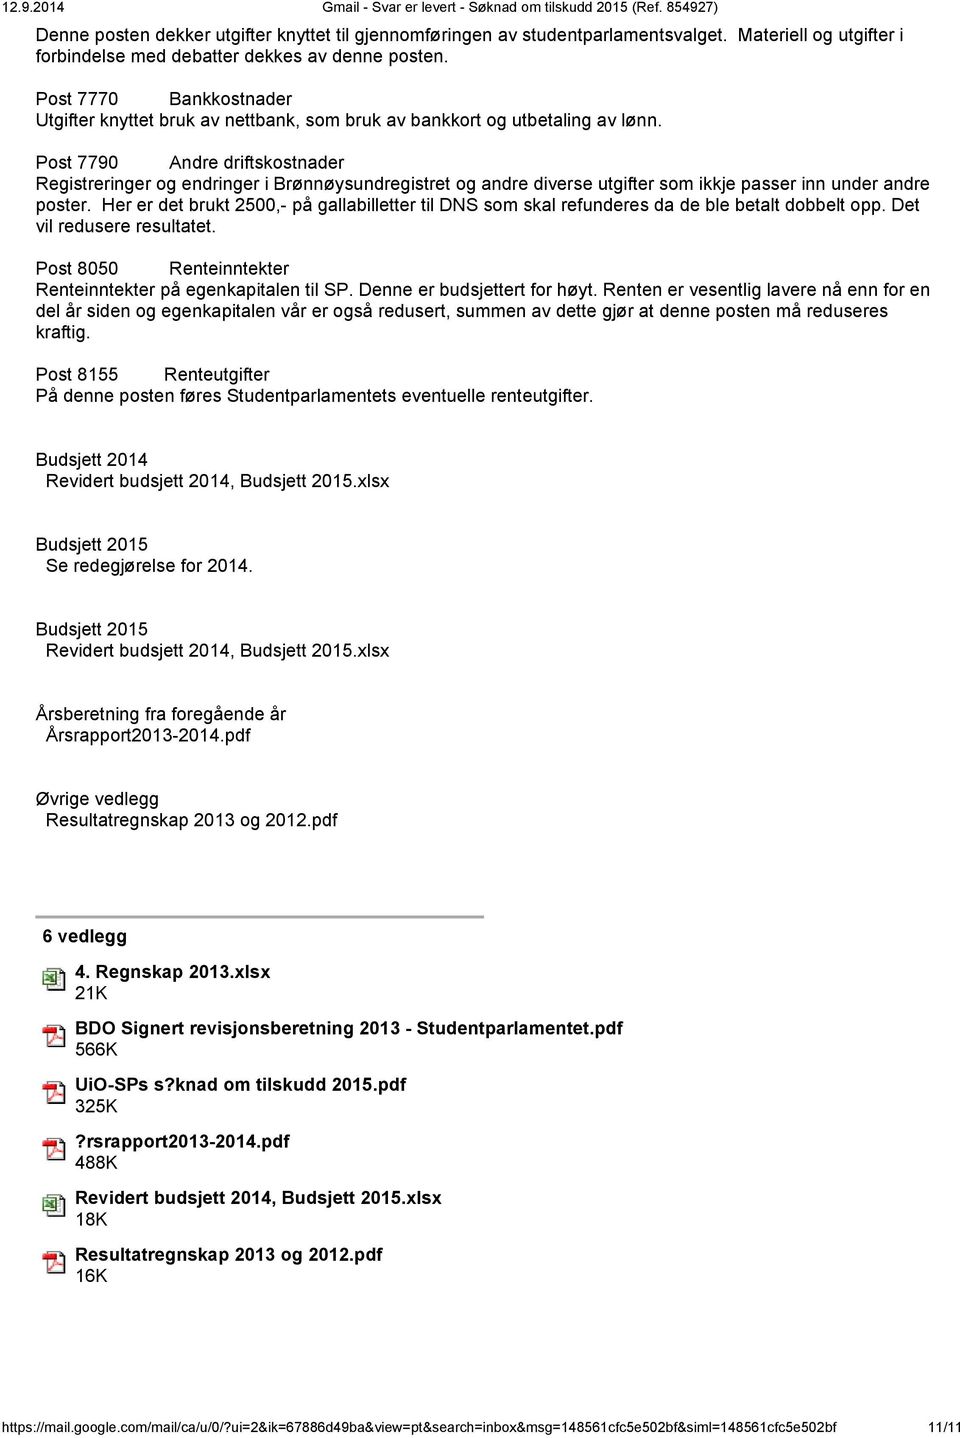 Post 7790 Andre driftskostnader Registreringer og endringer i Brønnøysundregistret og andre diverse utgifter som ikkje passer inn under andre poster.